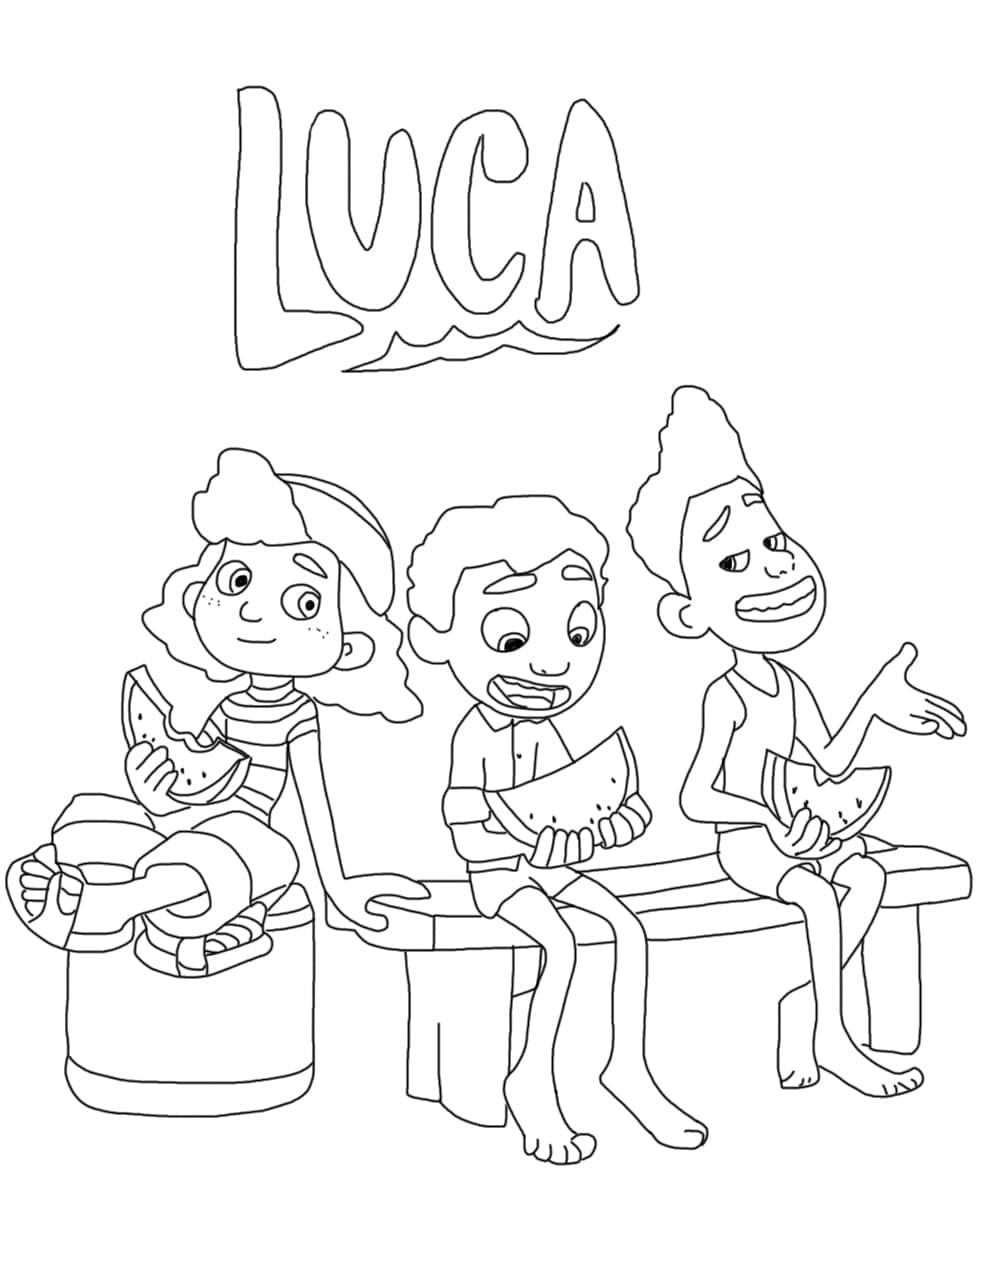 Luca med venner fargeleggingsside